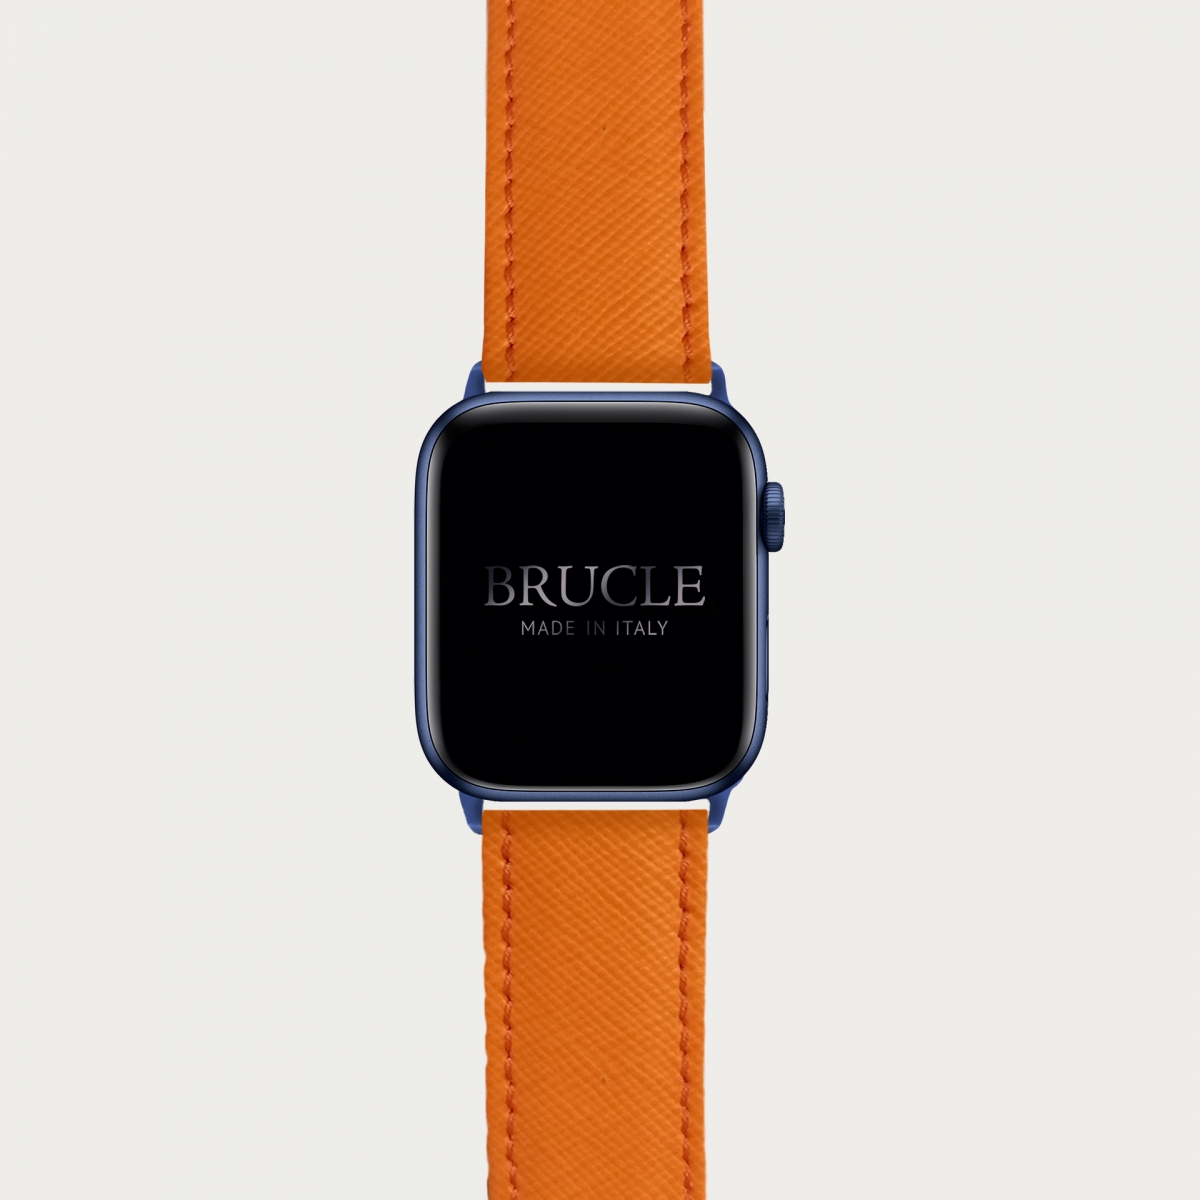 Correa de reloj compatible con Apple Watch / Samsung smartwatch, naranja Saffiano